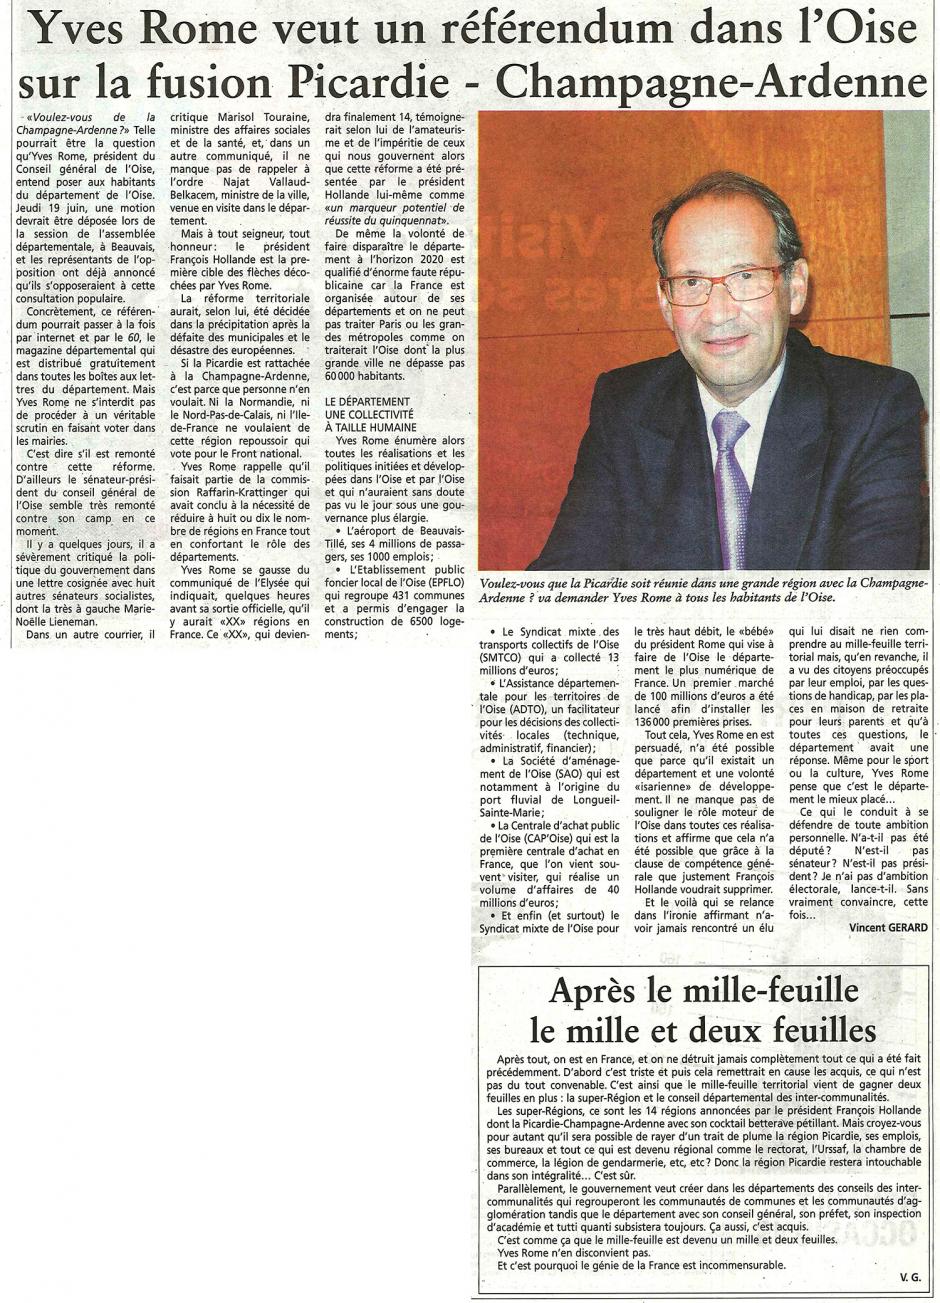 20140618-OH-Oise-Rome veut un référendum dans le département sur la fusion Picardie-Champagne-Ardenne